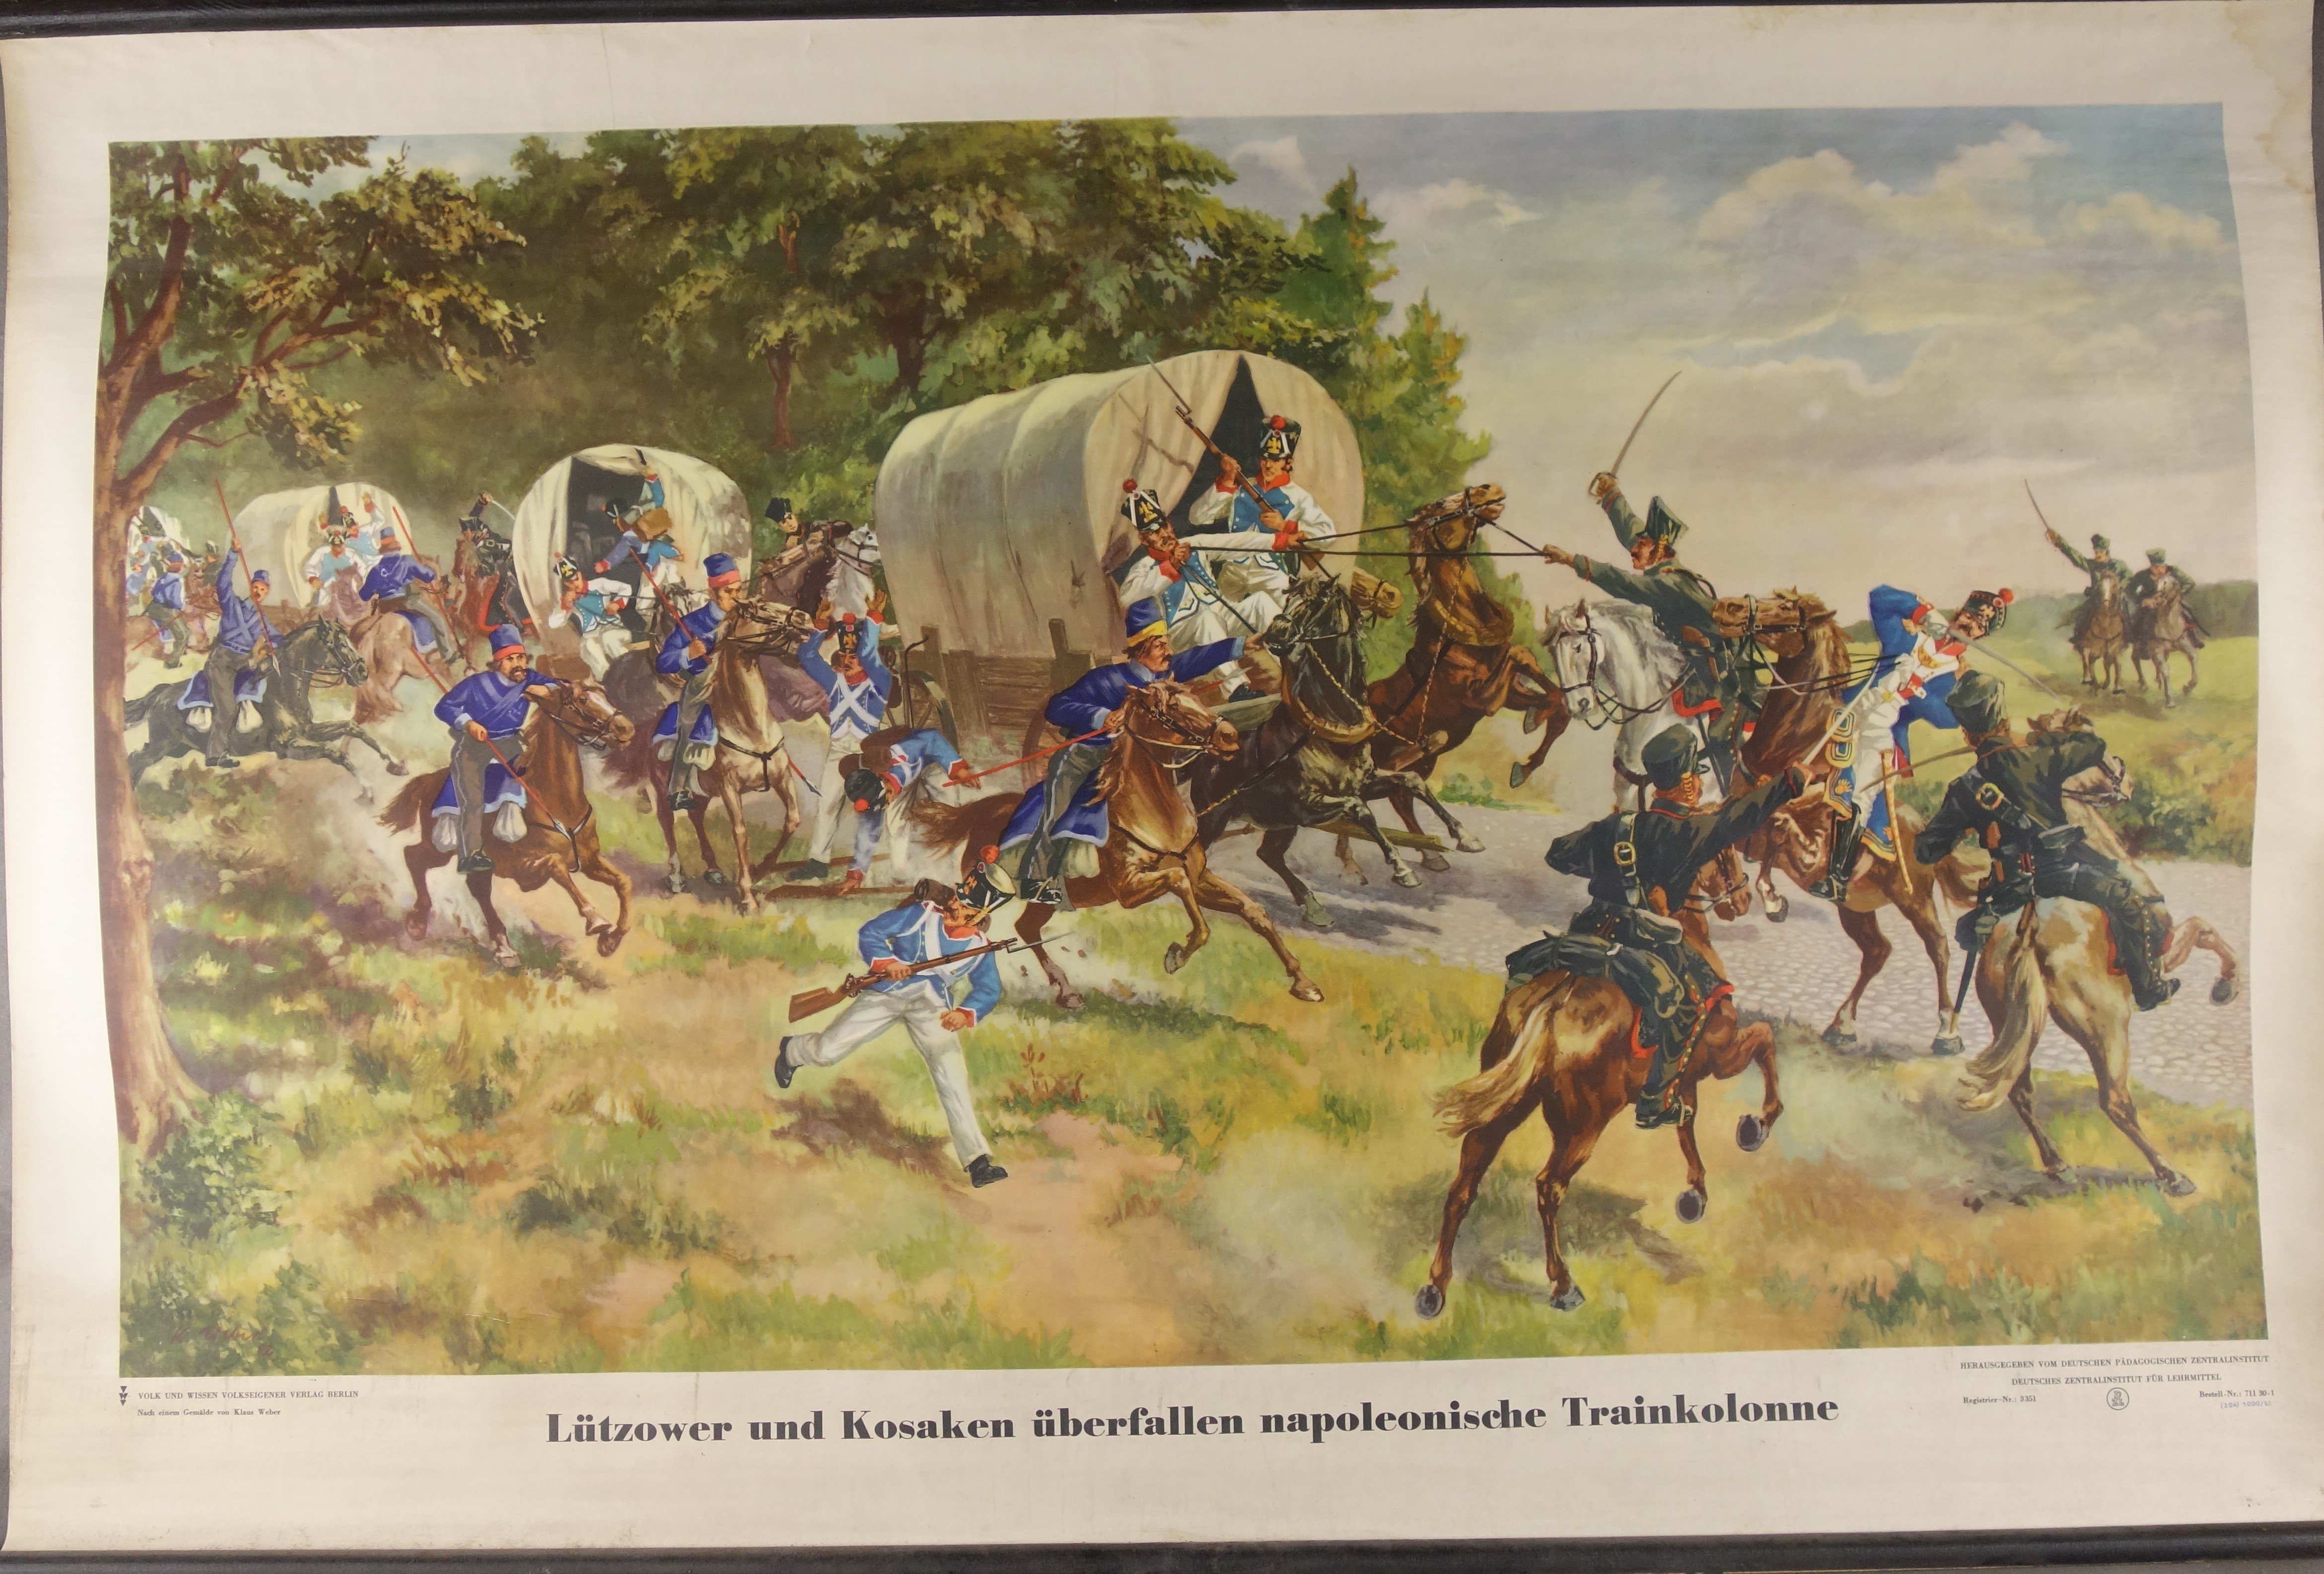 Wandkarte "Lützower und Kosaken überfallen napoleonische Trainkolonne" (Förder- und Heimatverein Stadt und Kloster Jerichow e.V. CC BY-NC-SA)